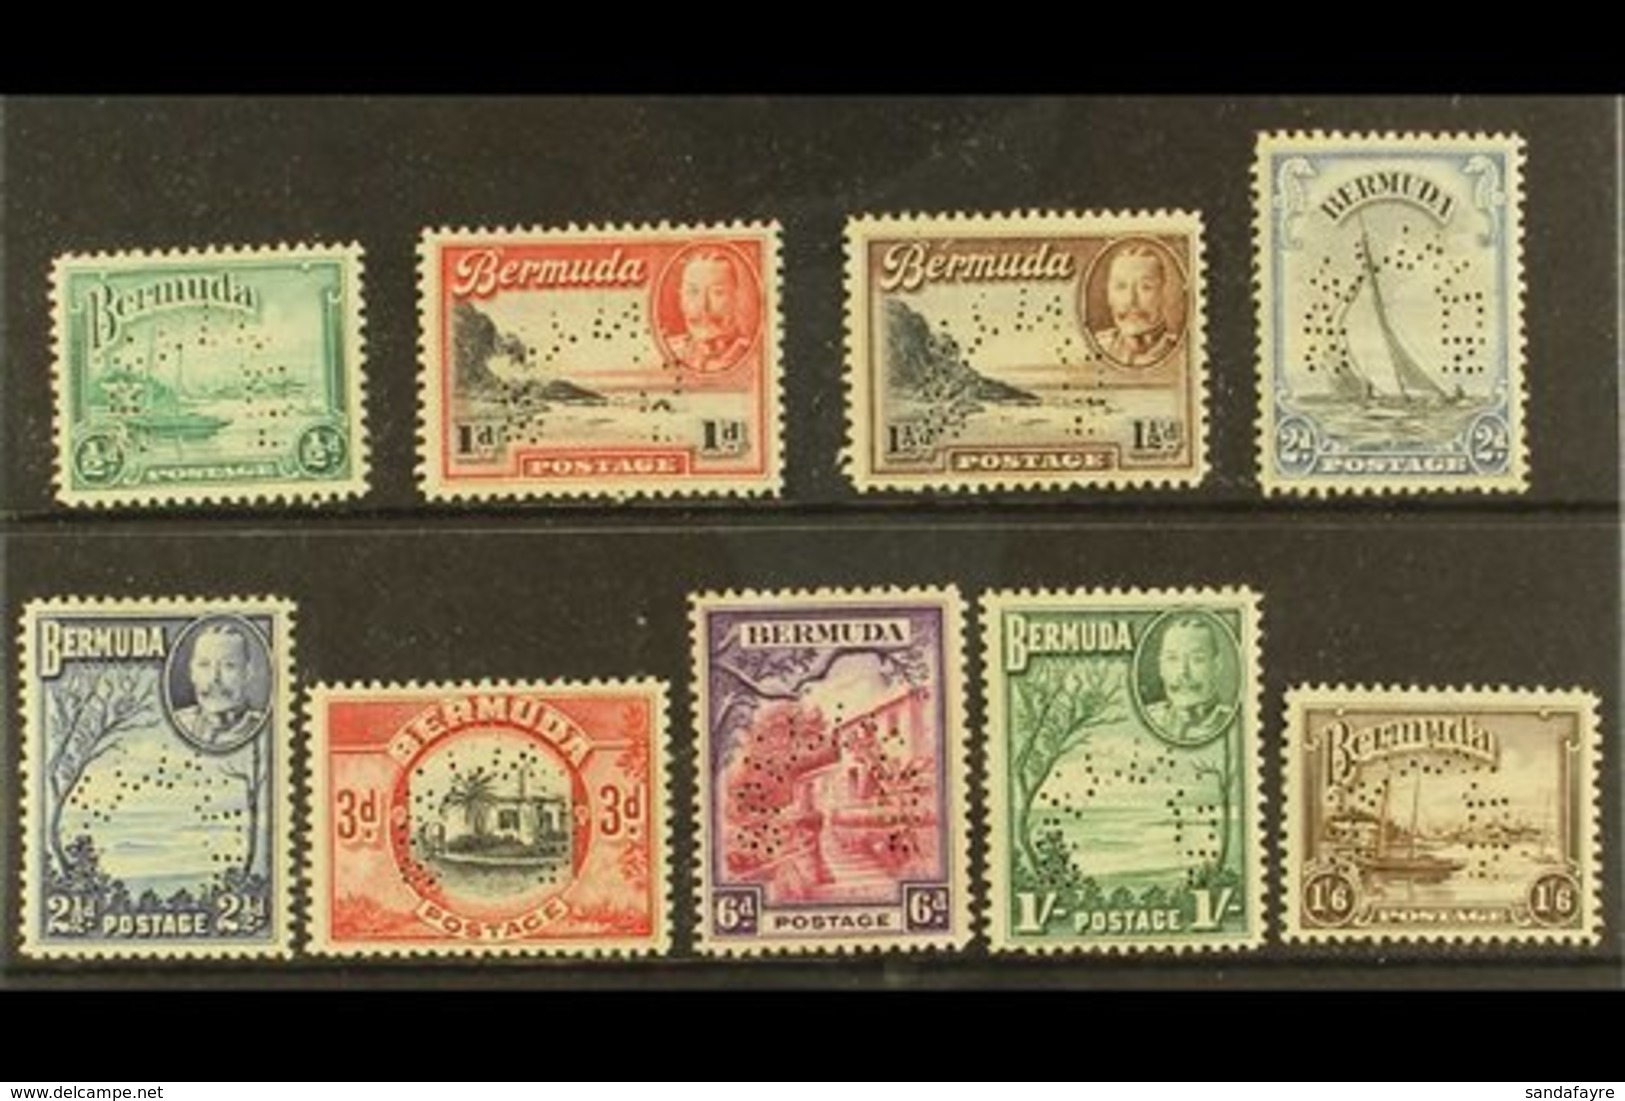 1936 Geo V Pictorial Set, Perf "Specimen", SG 98s/106s, Very Fine Mint, Large Part Og. (9 Stamps) For More Images, Pleas - Bermuda